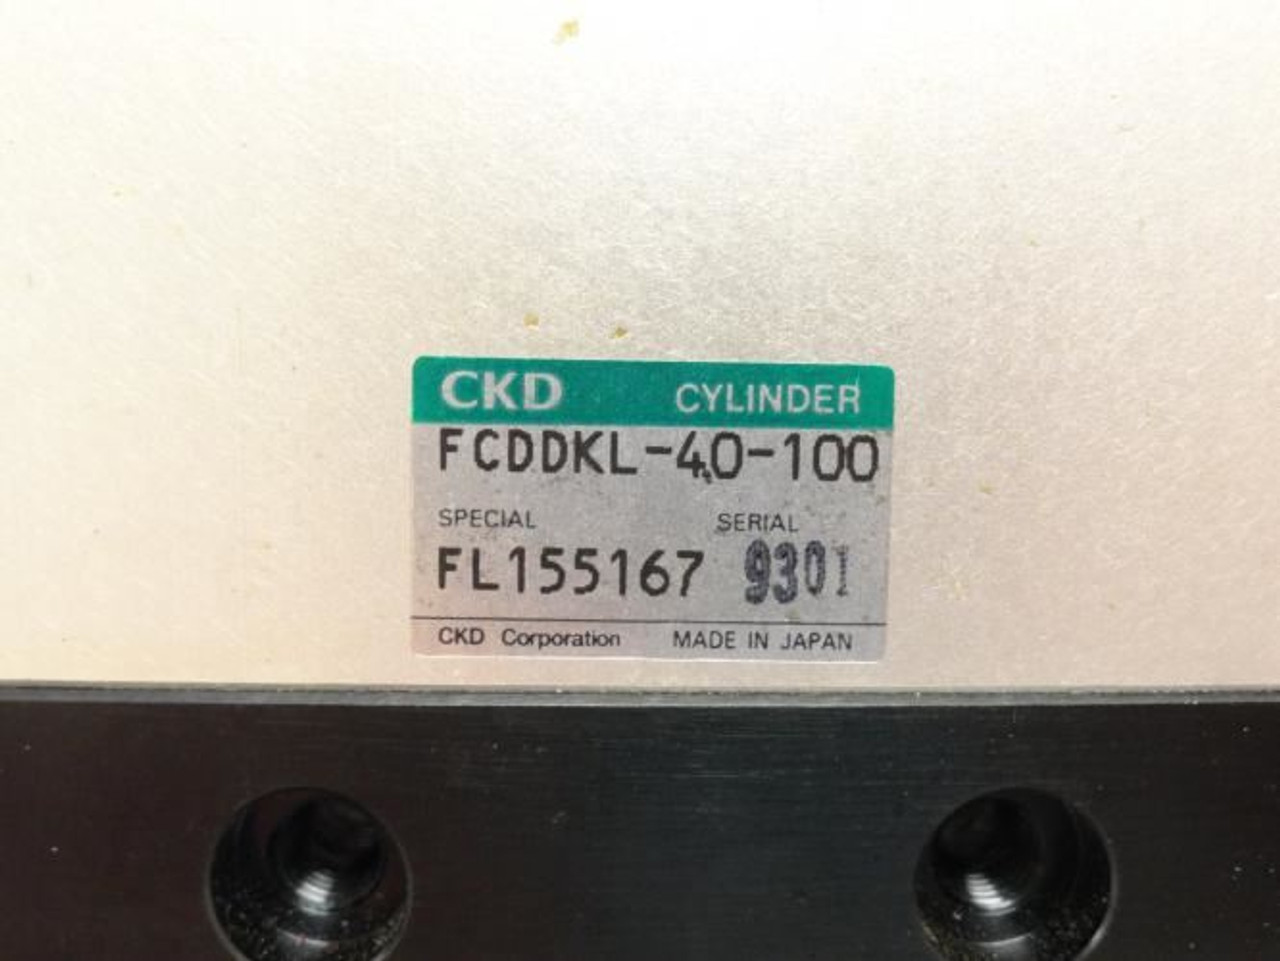 CKD FCDDKKL-40-100; Slide Box Cylinder 40mm Bore; 100mm Stroke